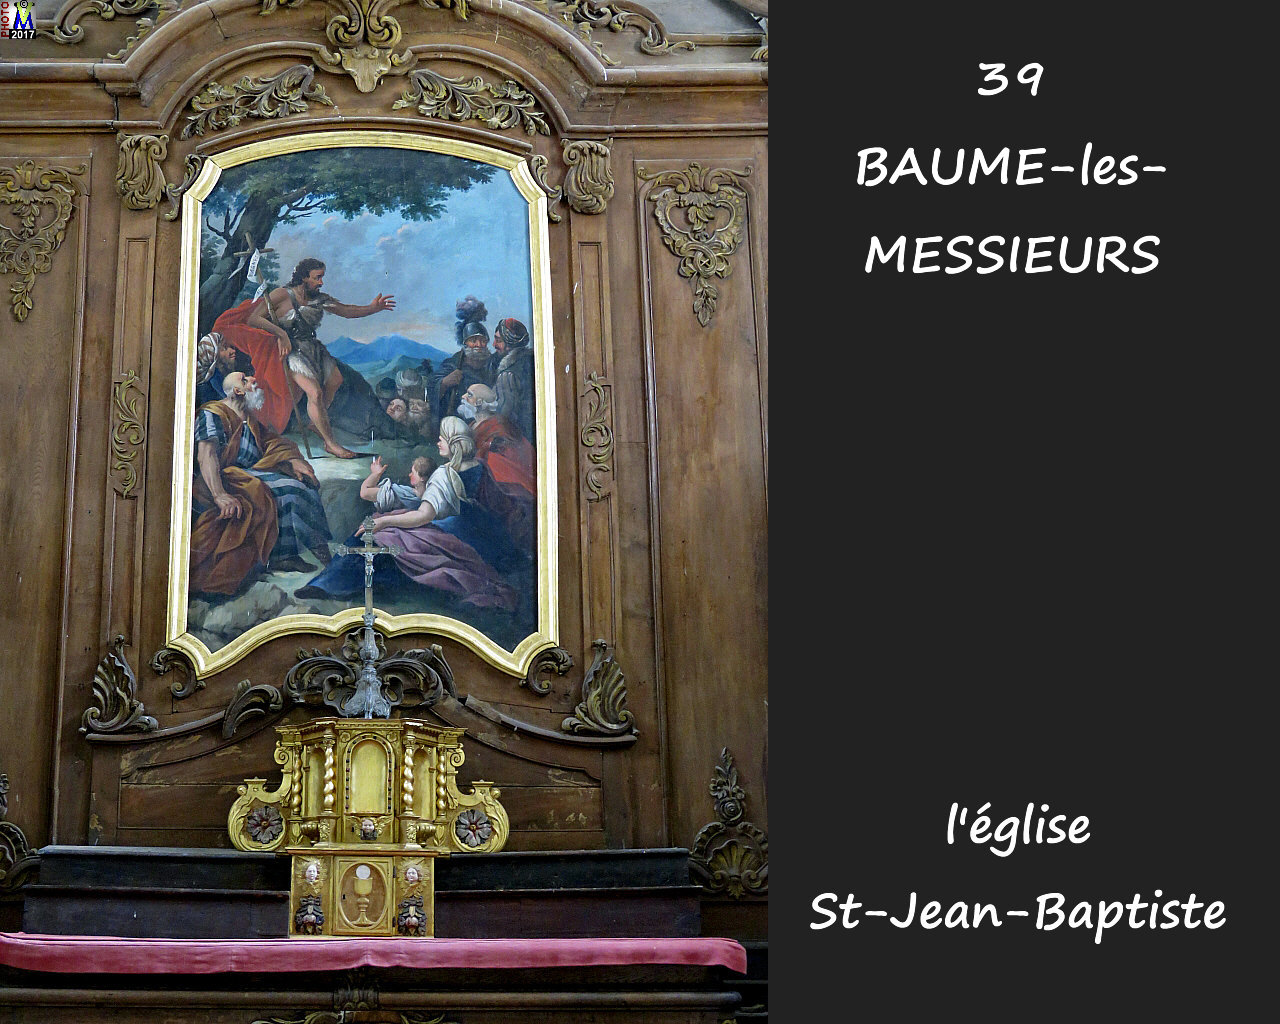 39BAUME-LES-MESSIEURS_eglise_216.jpg